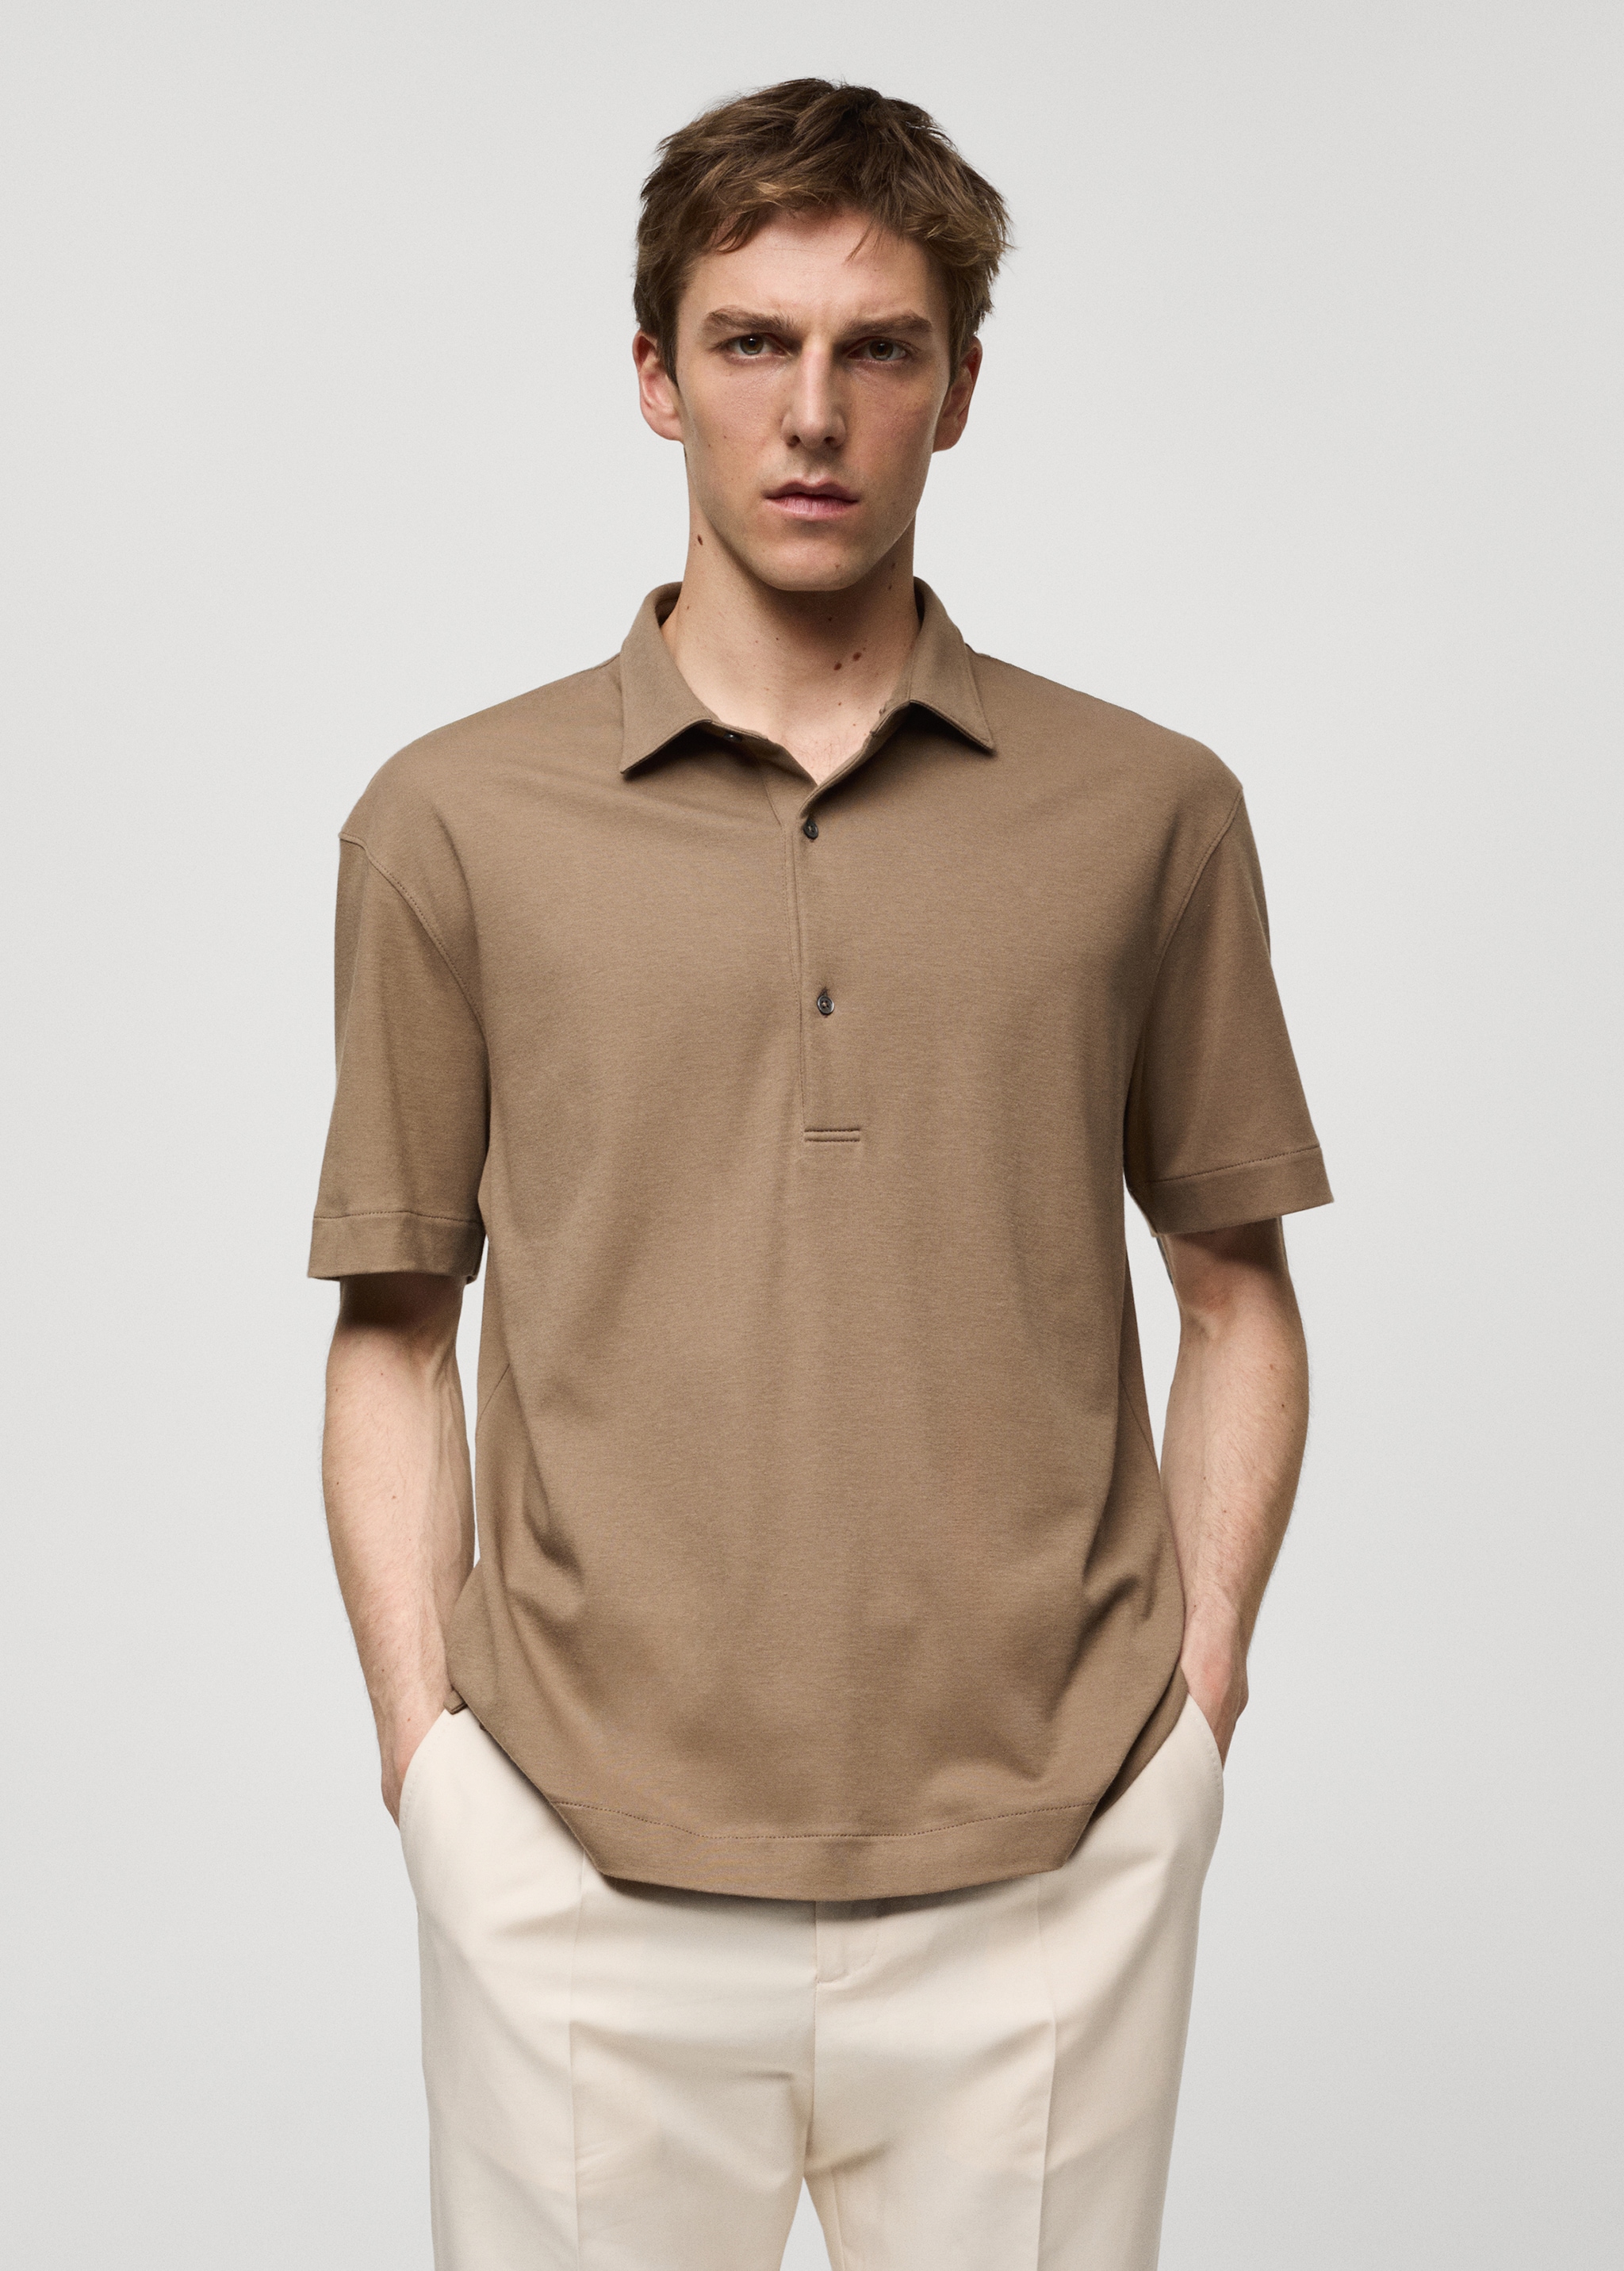 100% cotton slim-fit polo shirt - Medium plane